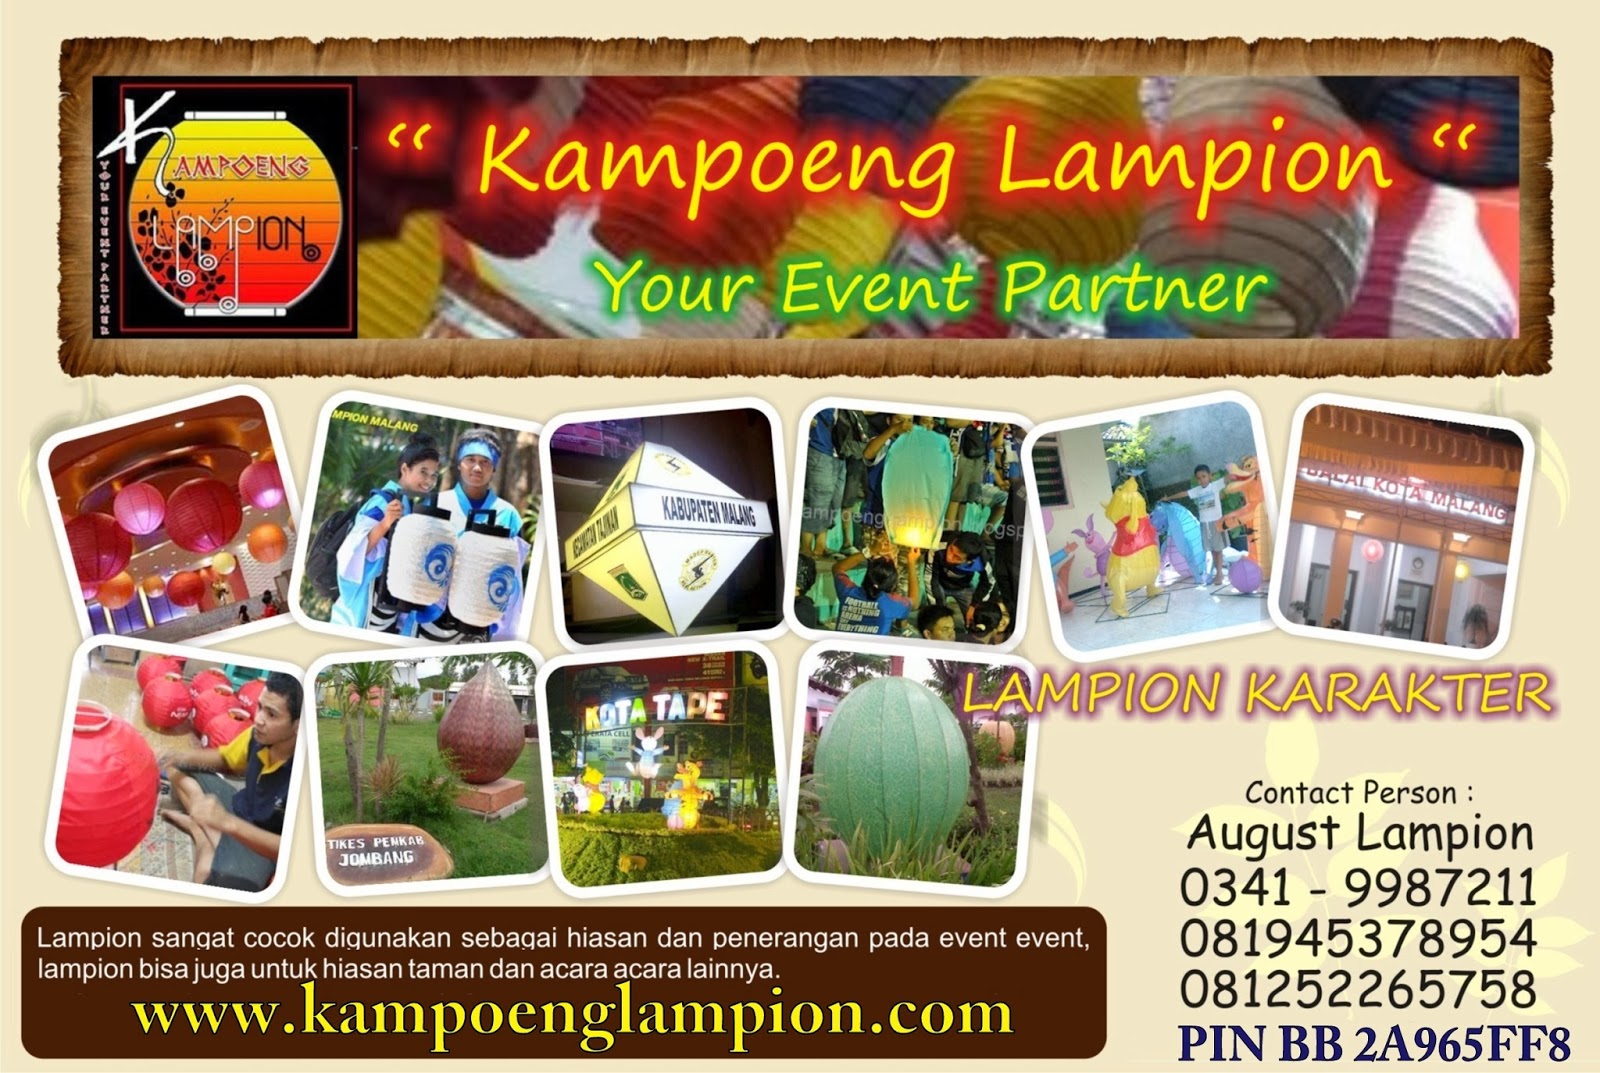 "Kampoeng Lampion™" pembuat Lampion di kota Malang